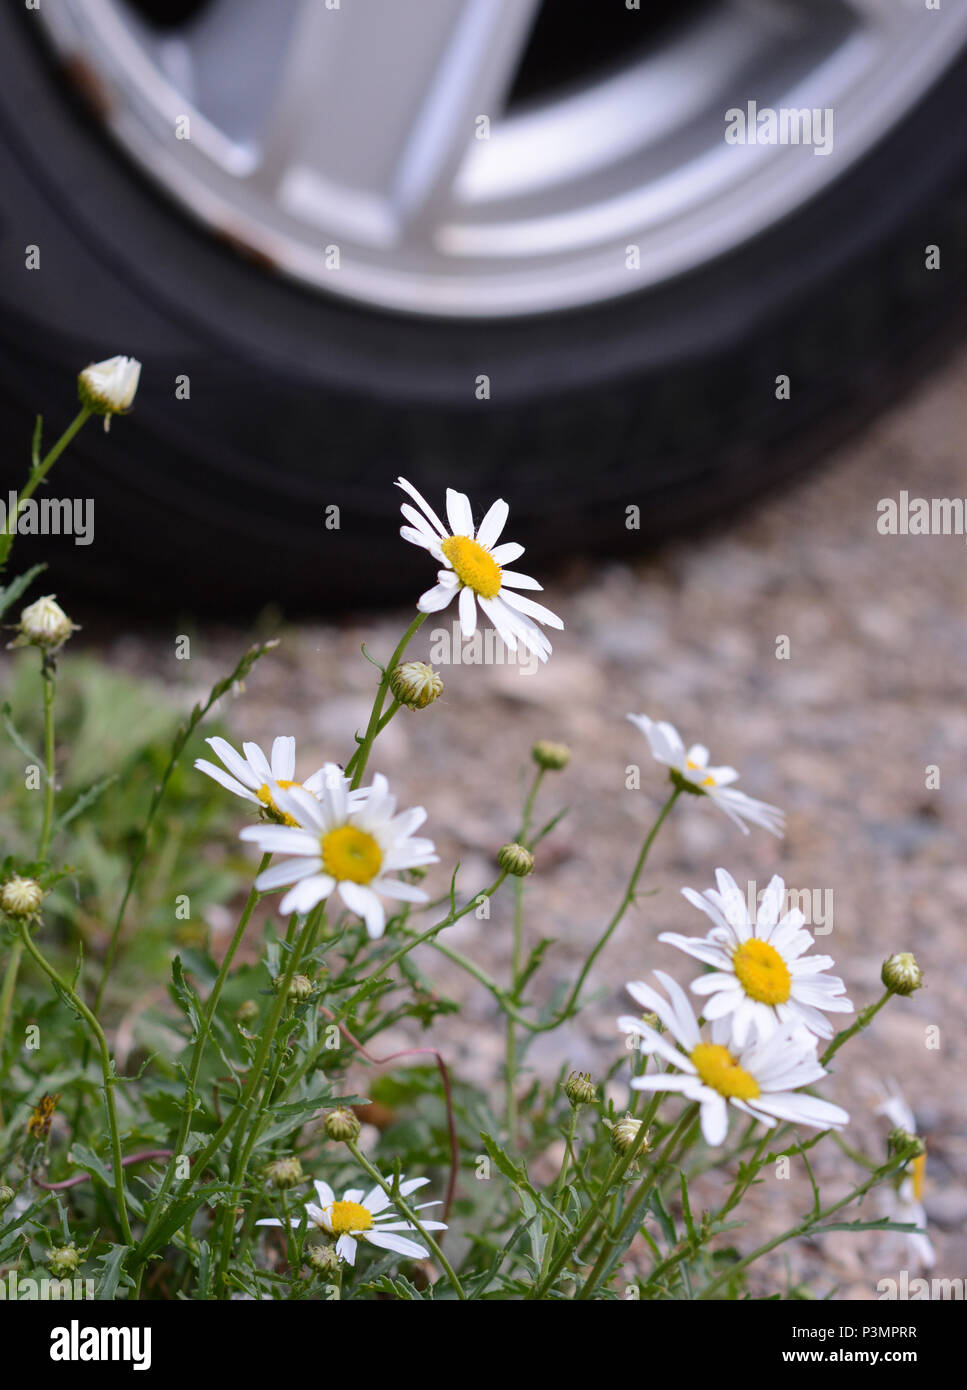 Cerrar fotografía de margaritas blancas que florece en un parking con un neumático de automóvil en el fondo. Foto de stock